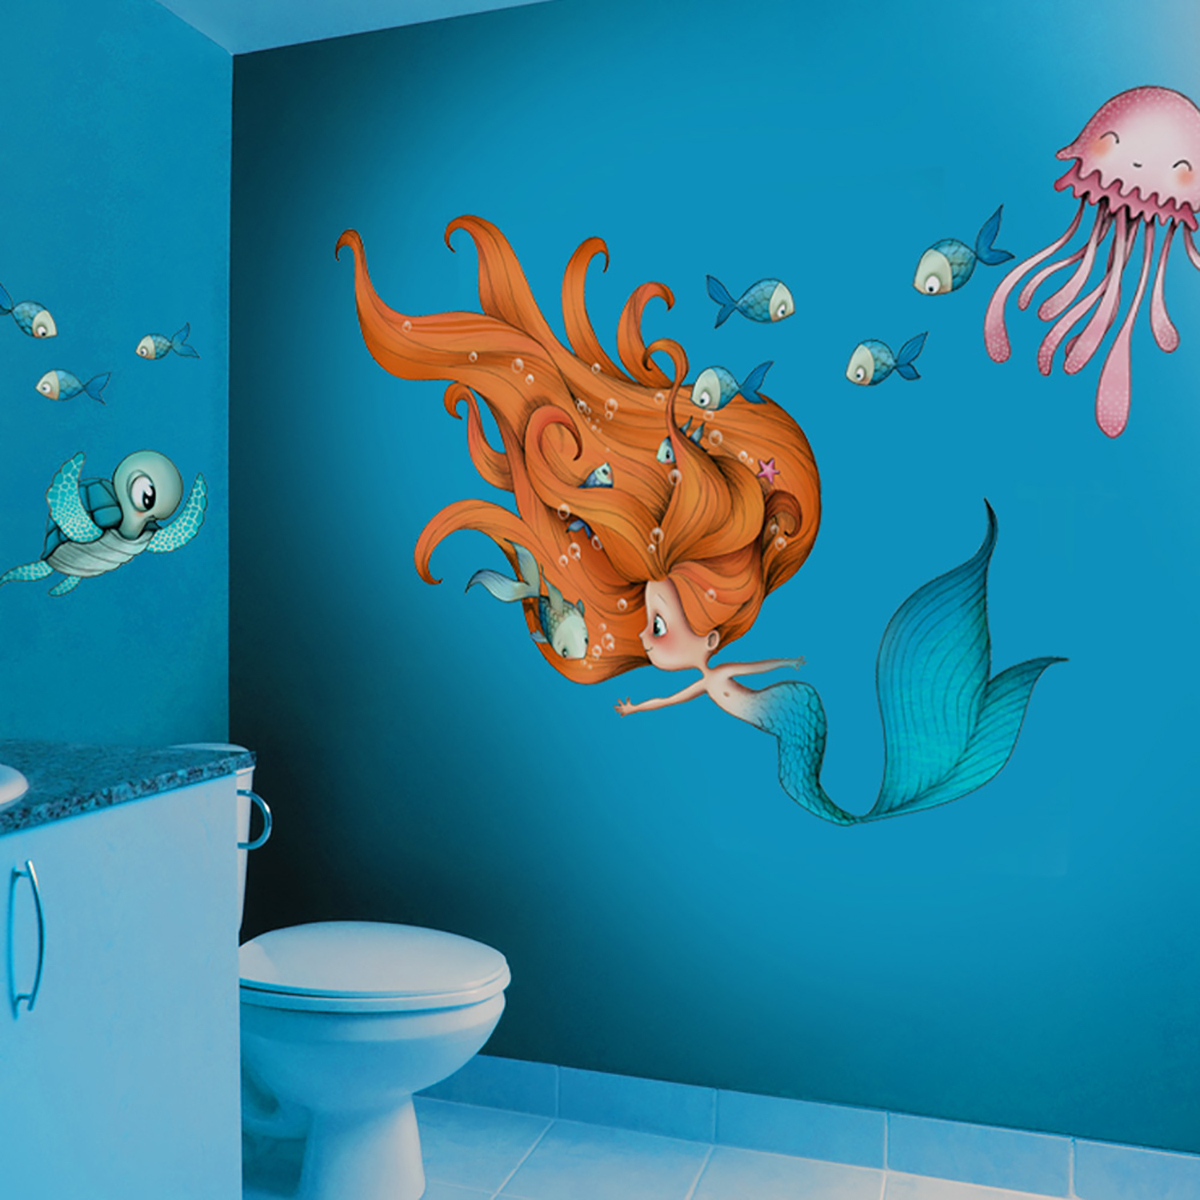 Adhesivo mural infantil Sirena y compañía- Acte Deco